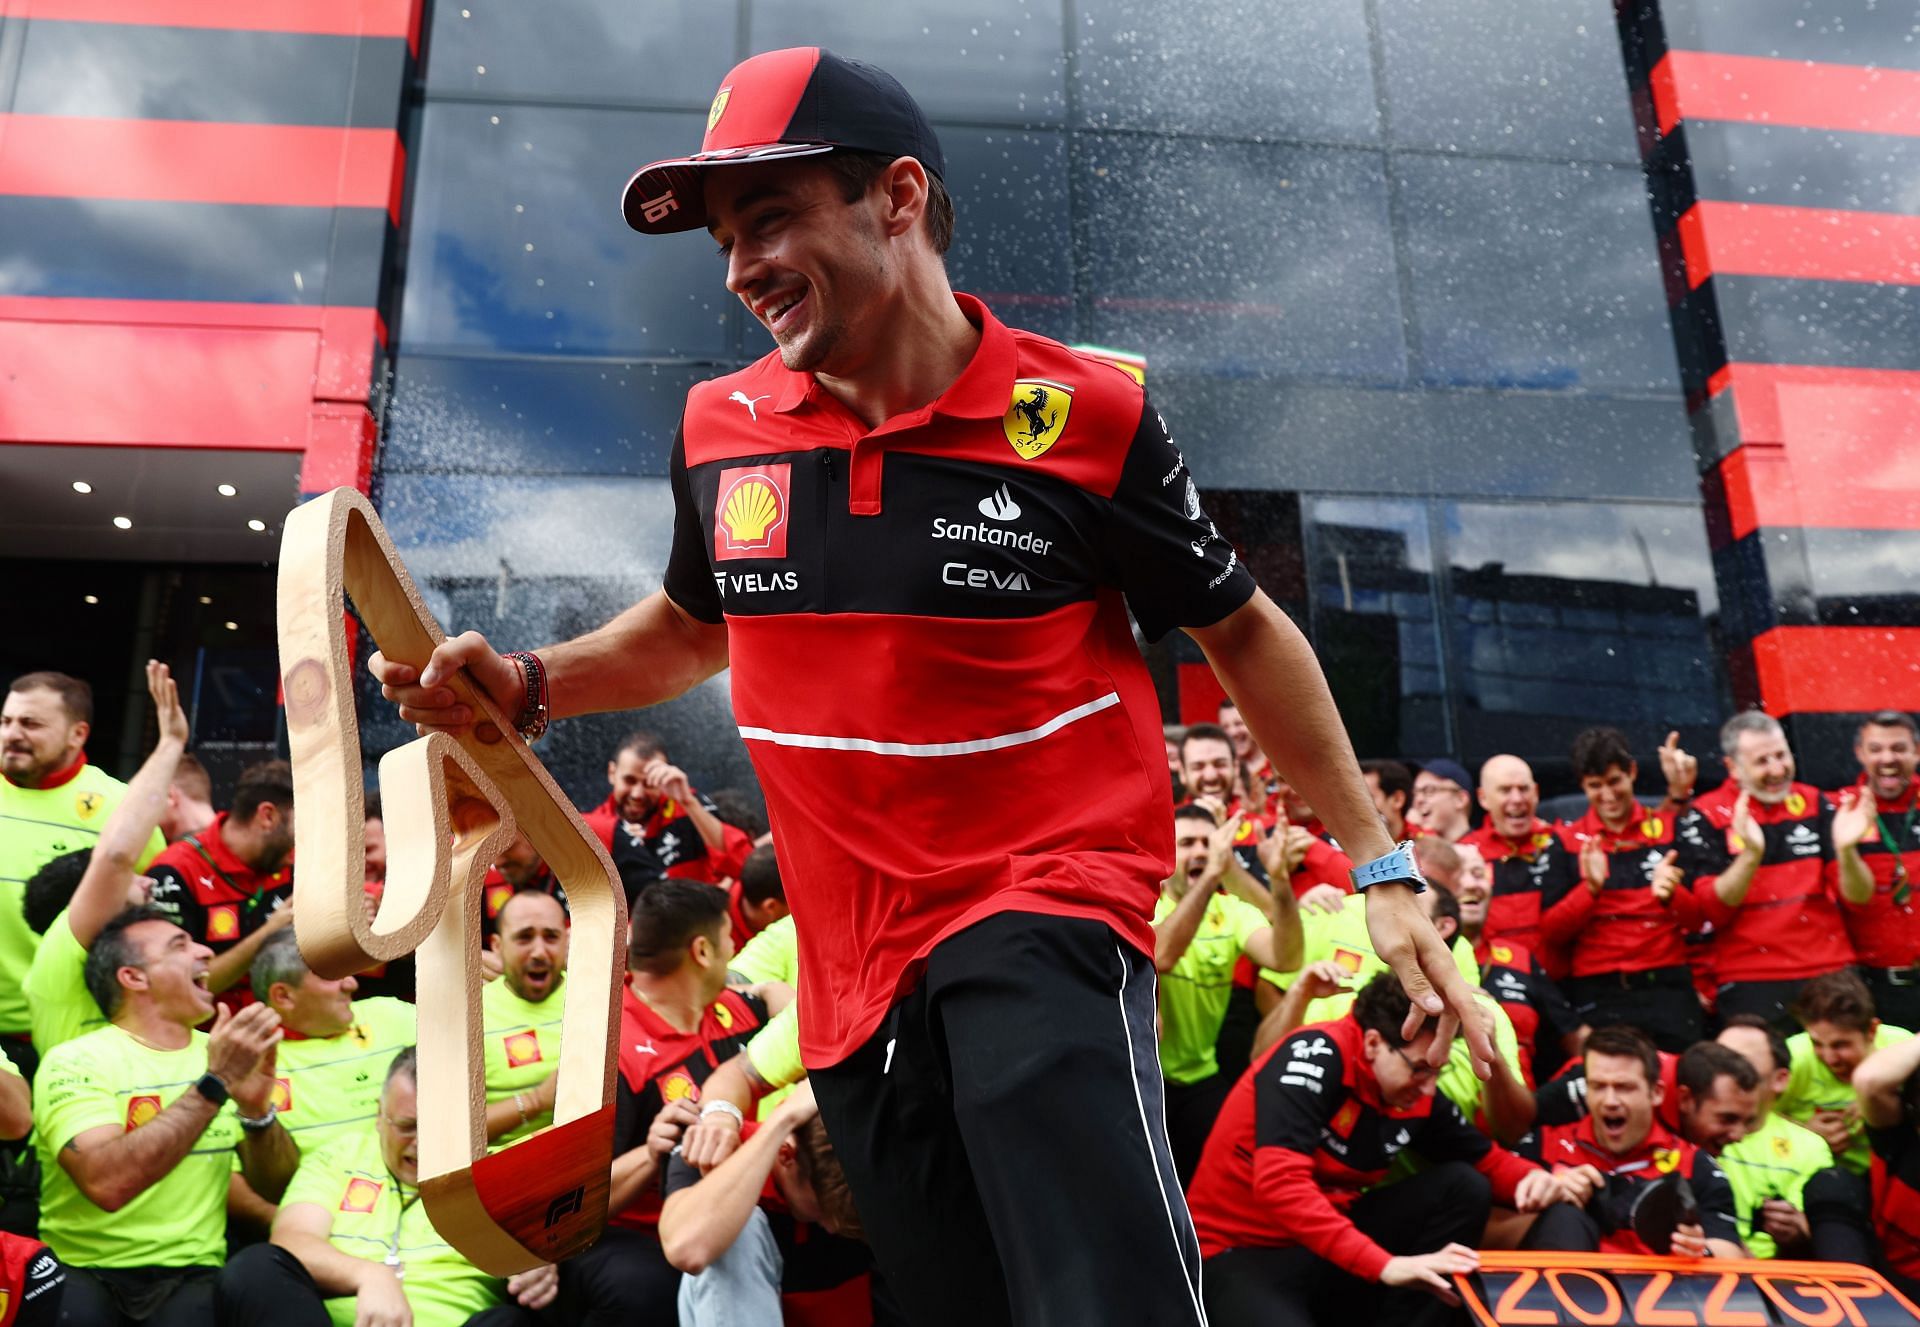 F1 Grand Prix of Austria - Charles Leclerc wins in Austria.